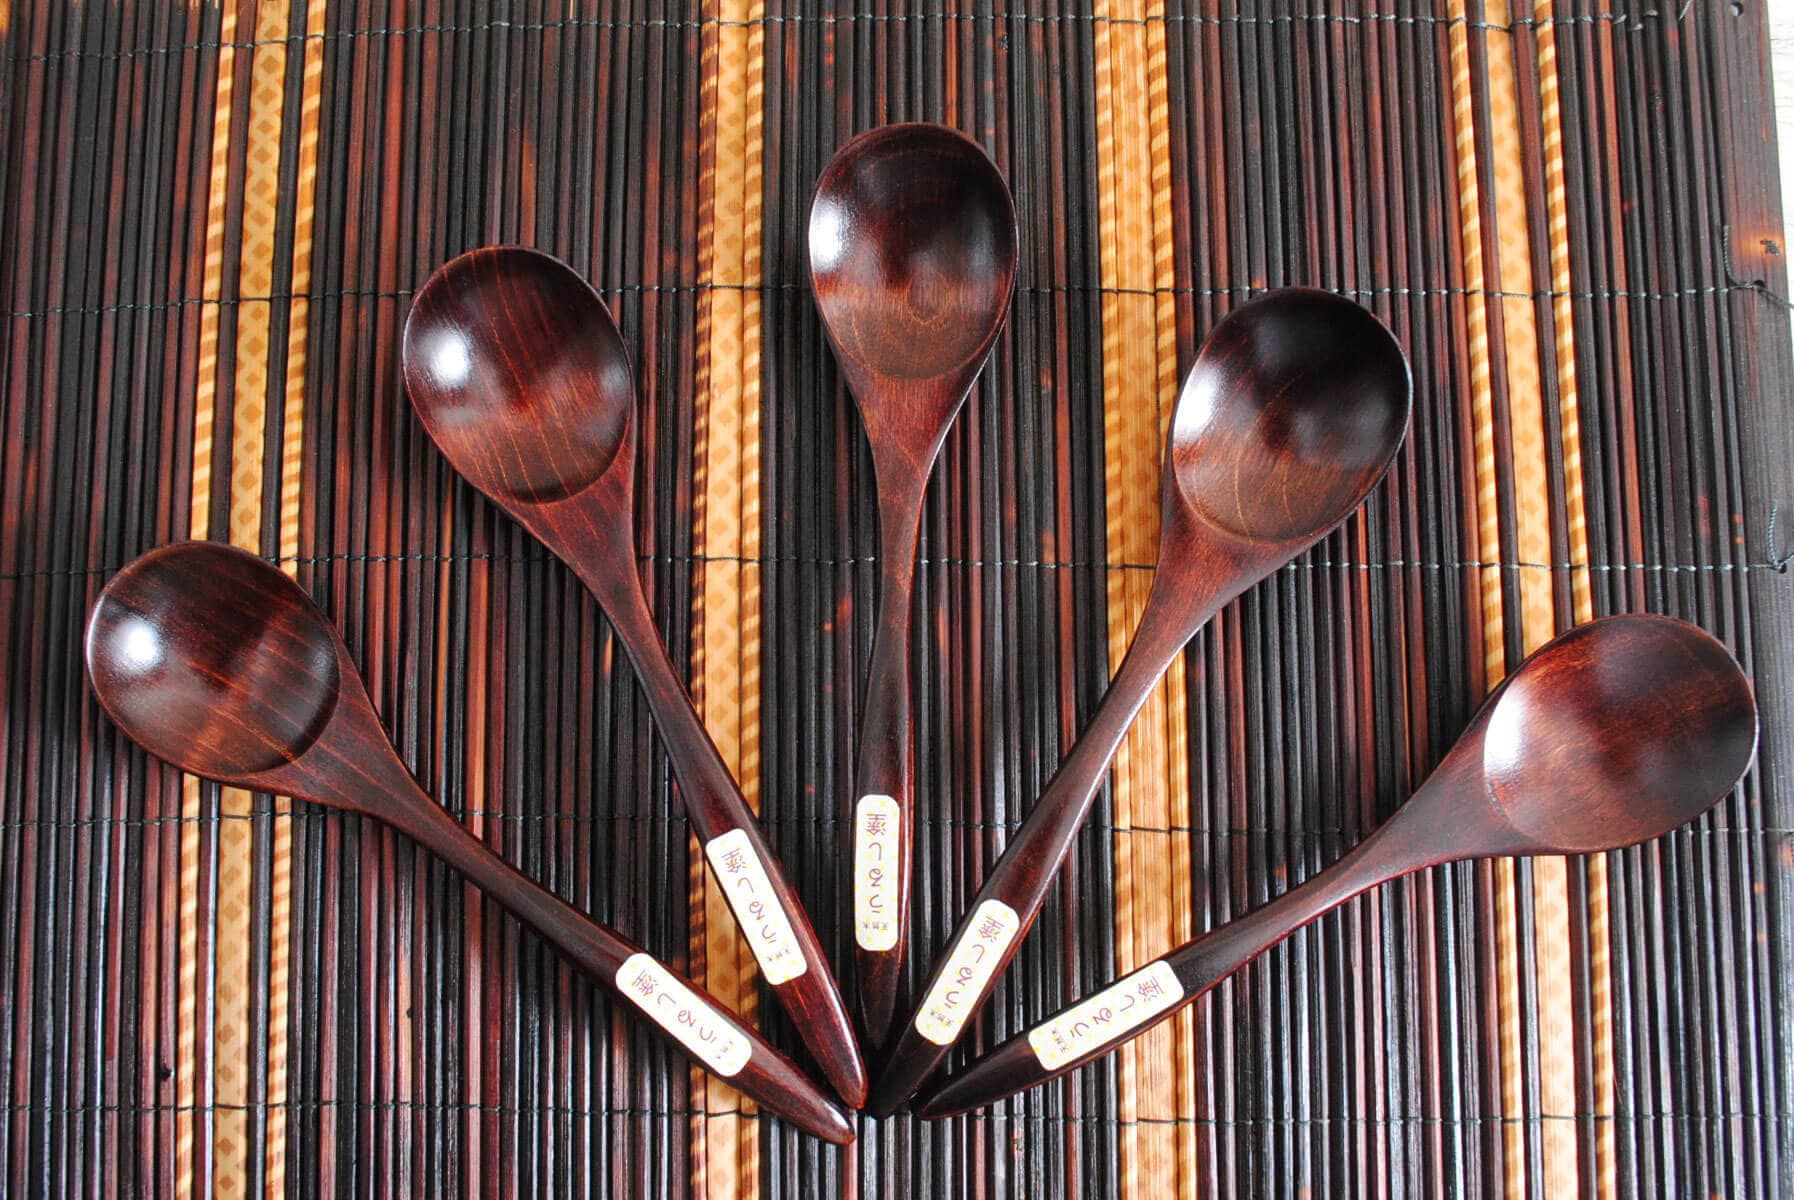 Japanese Beginner Spoon Carving Kit